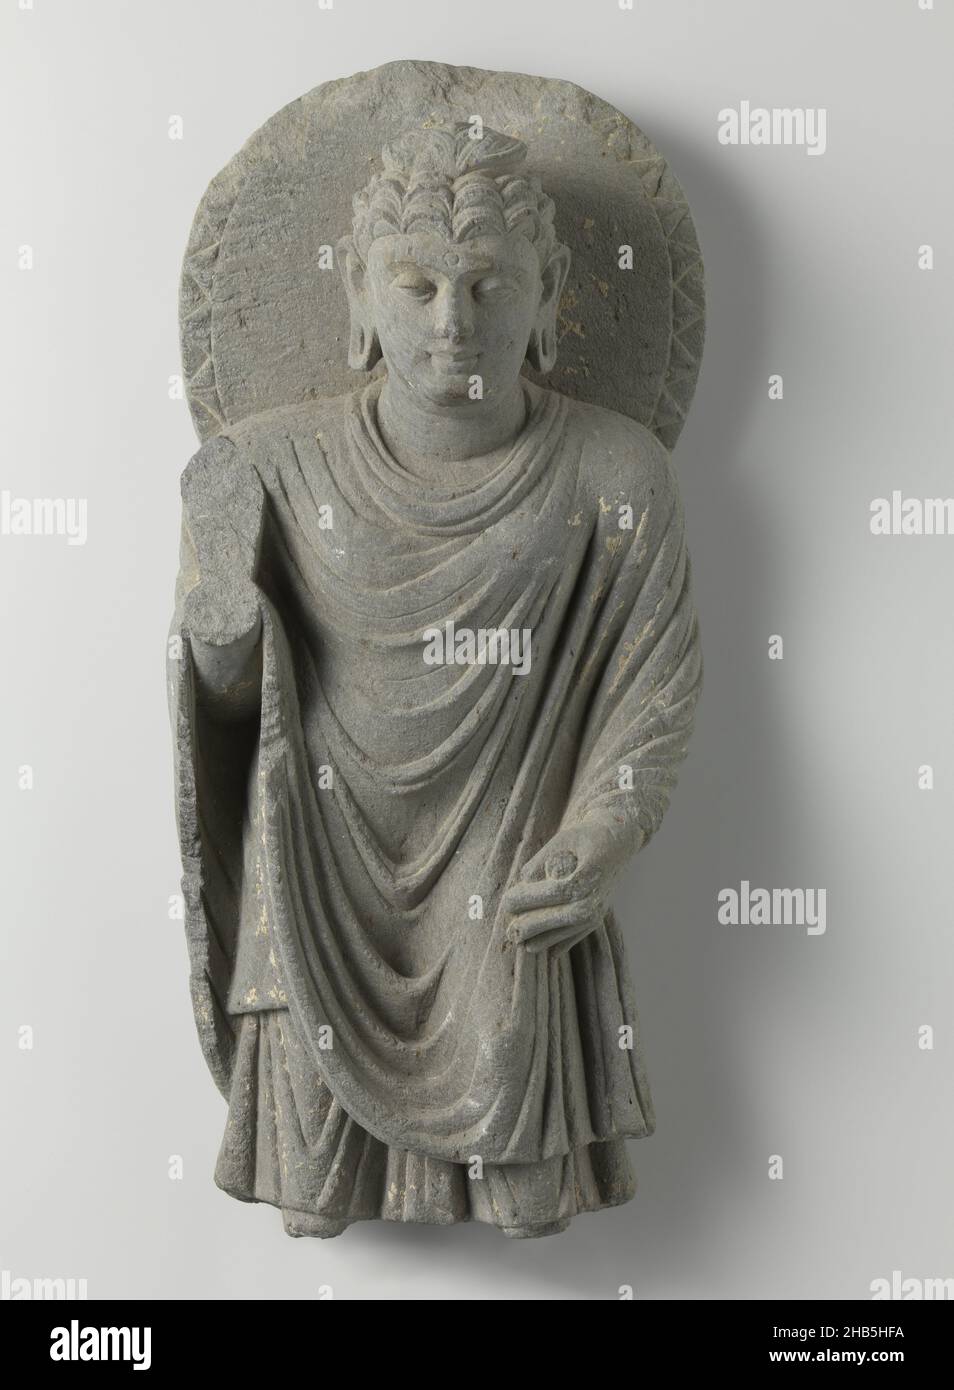 Image de Bouddha debout, image de Bouddha debout., anonyme, Gandhara, c.100 - c.300, ardoise (roche), hauteur 46,0 cm × hauteur 57,0 cm × largeur 20,7 cm × profondeur 12,1 cm × poids 11,5 kg Banque D'Images